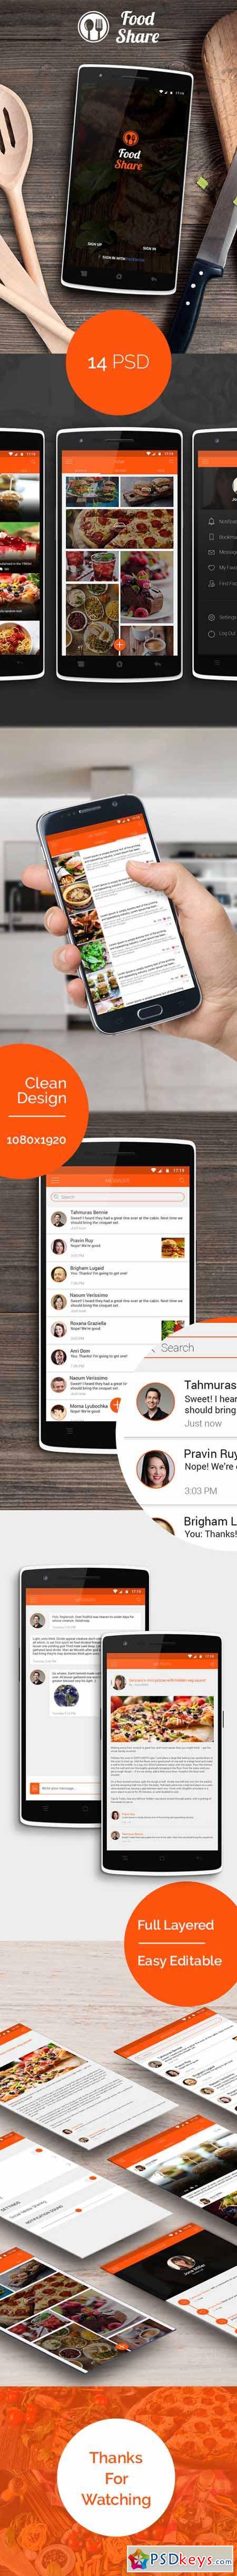 Food Share - Food App Template UI 450687